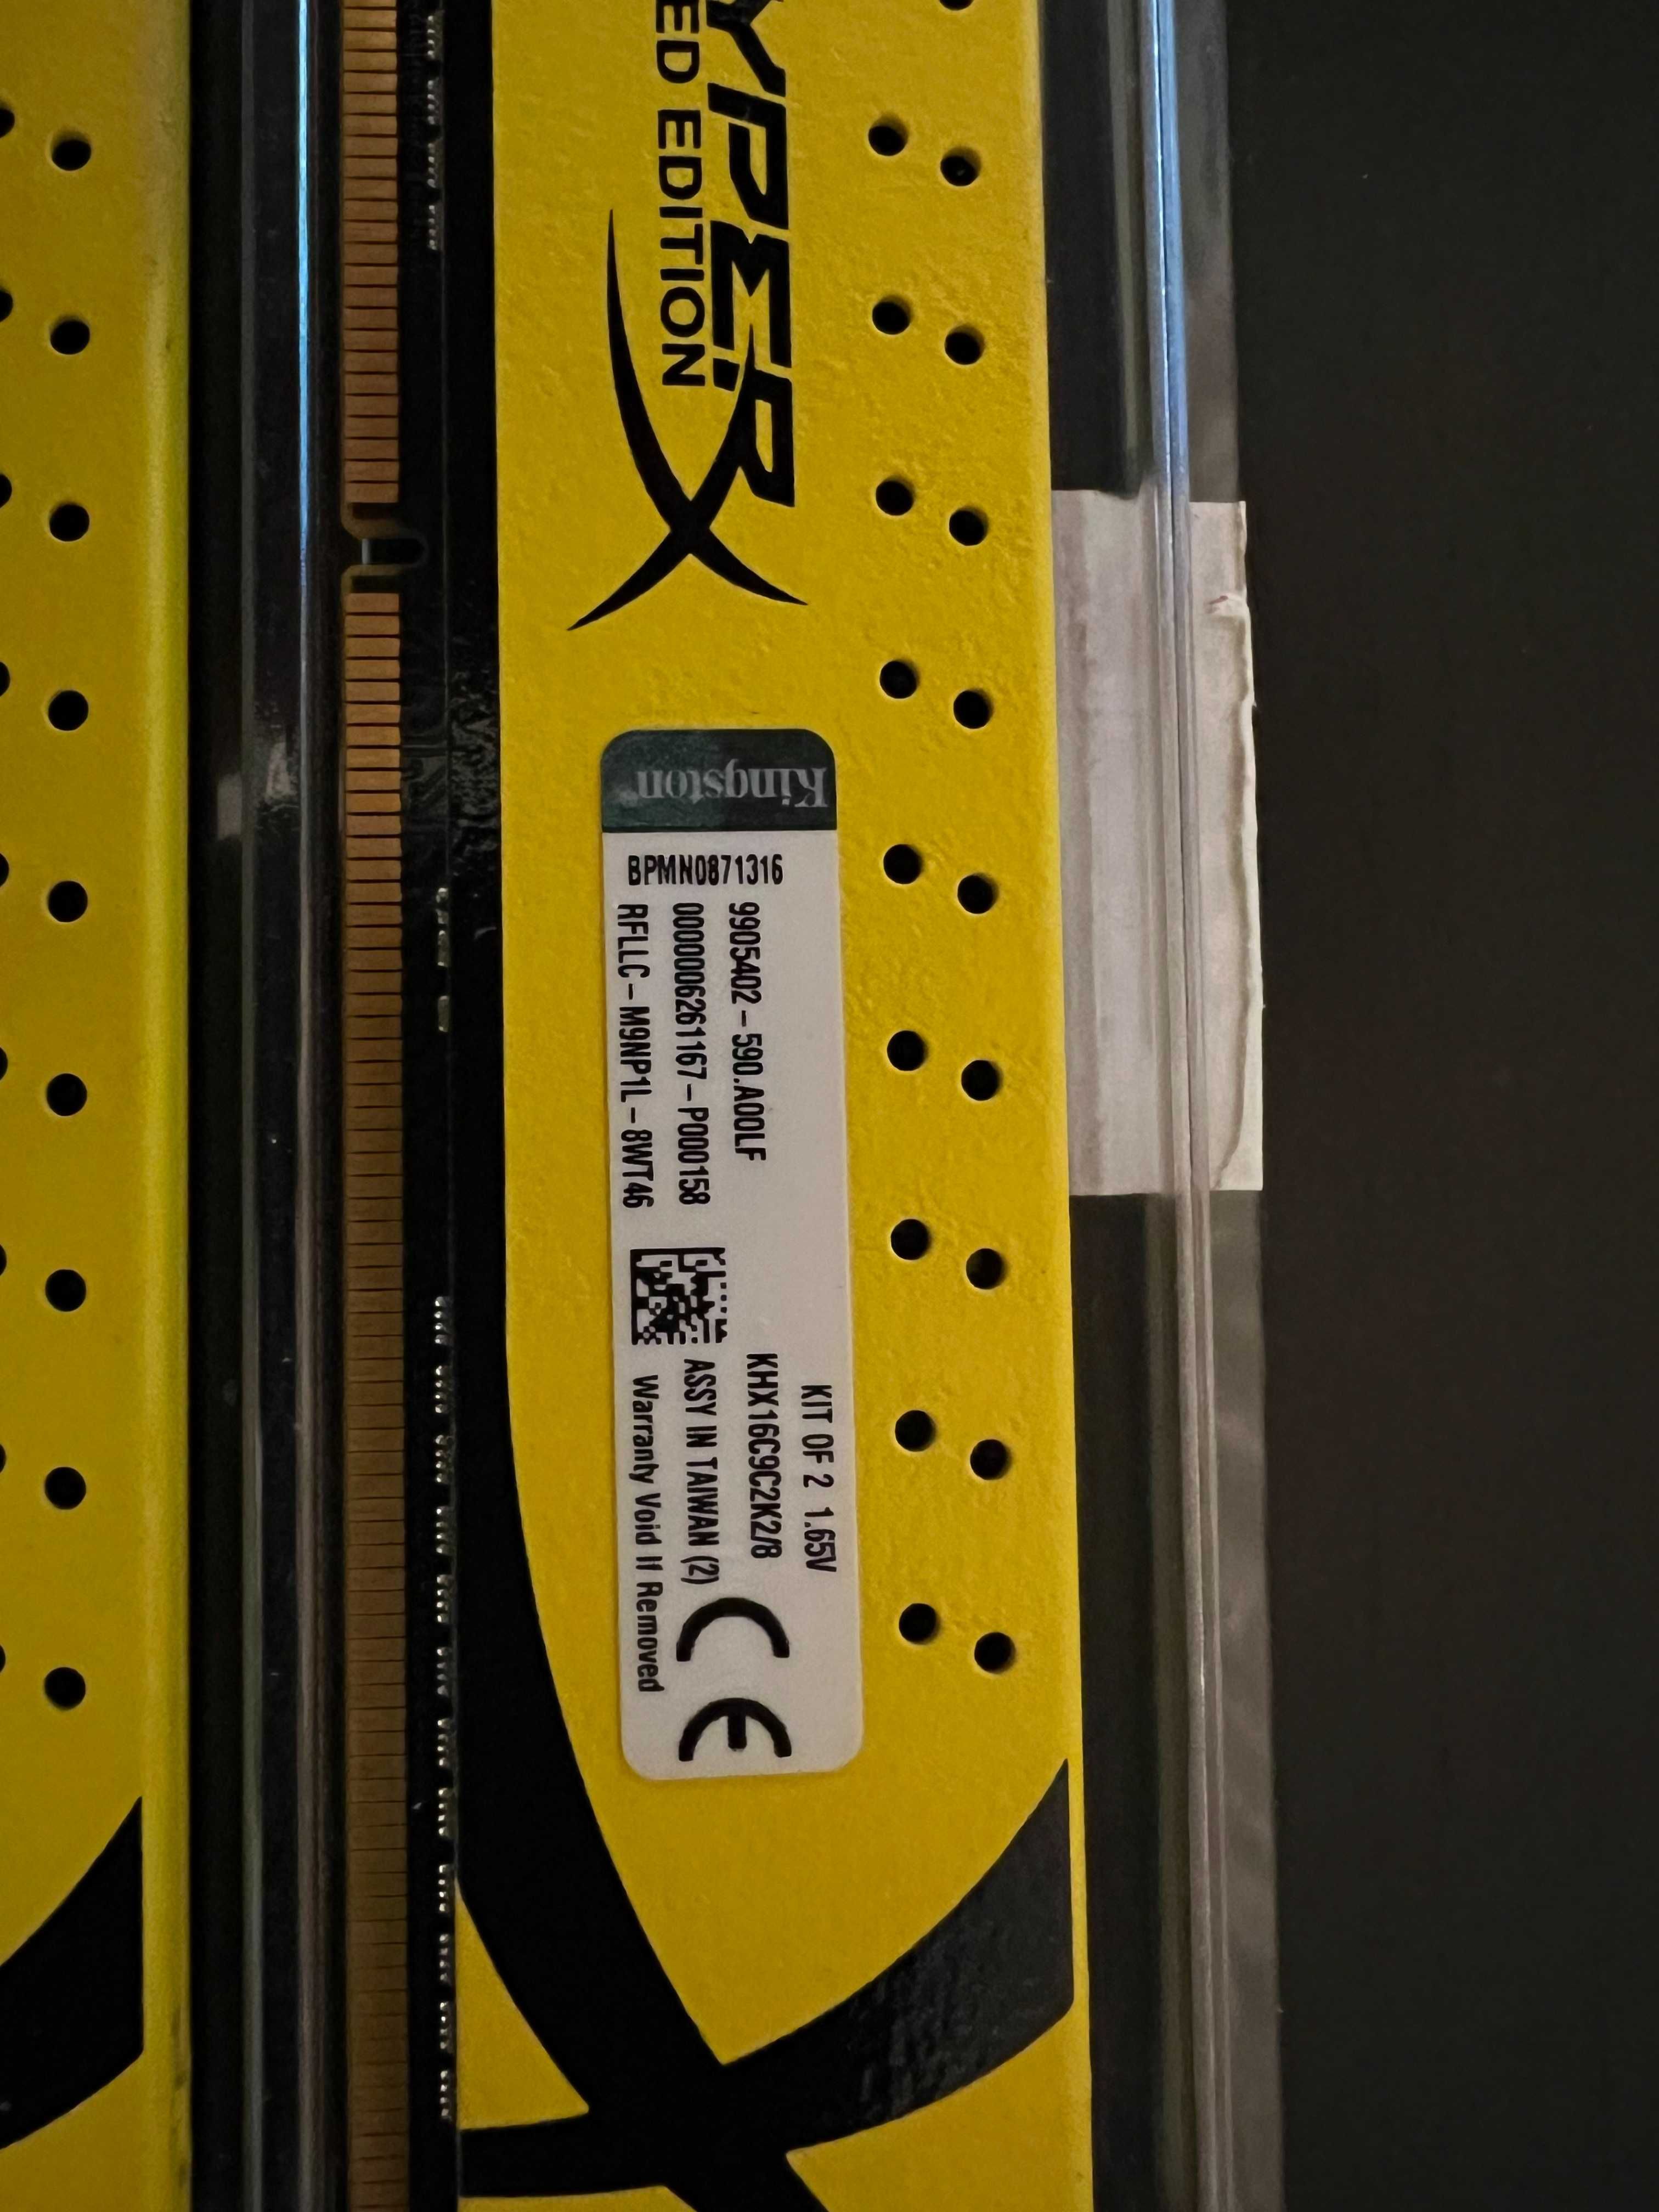 Kingston HyperX Limited Edition DDR3,Dual Chanel,8GB(2x4Gb)